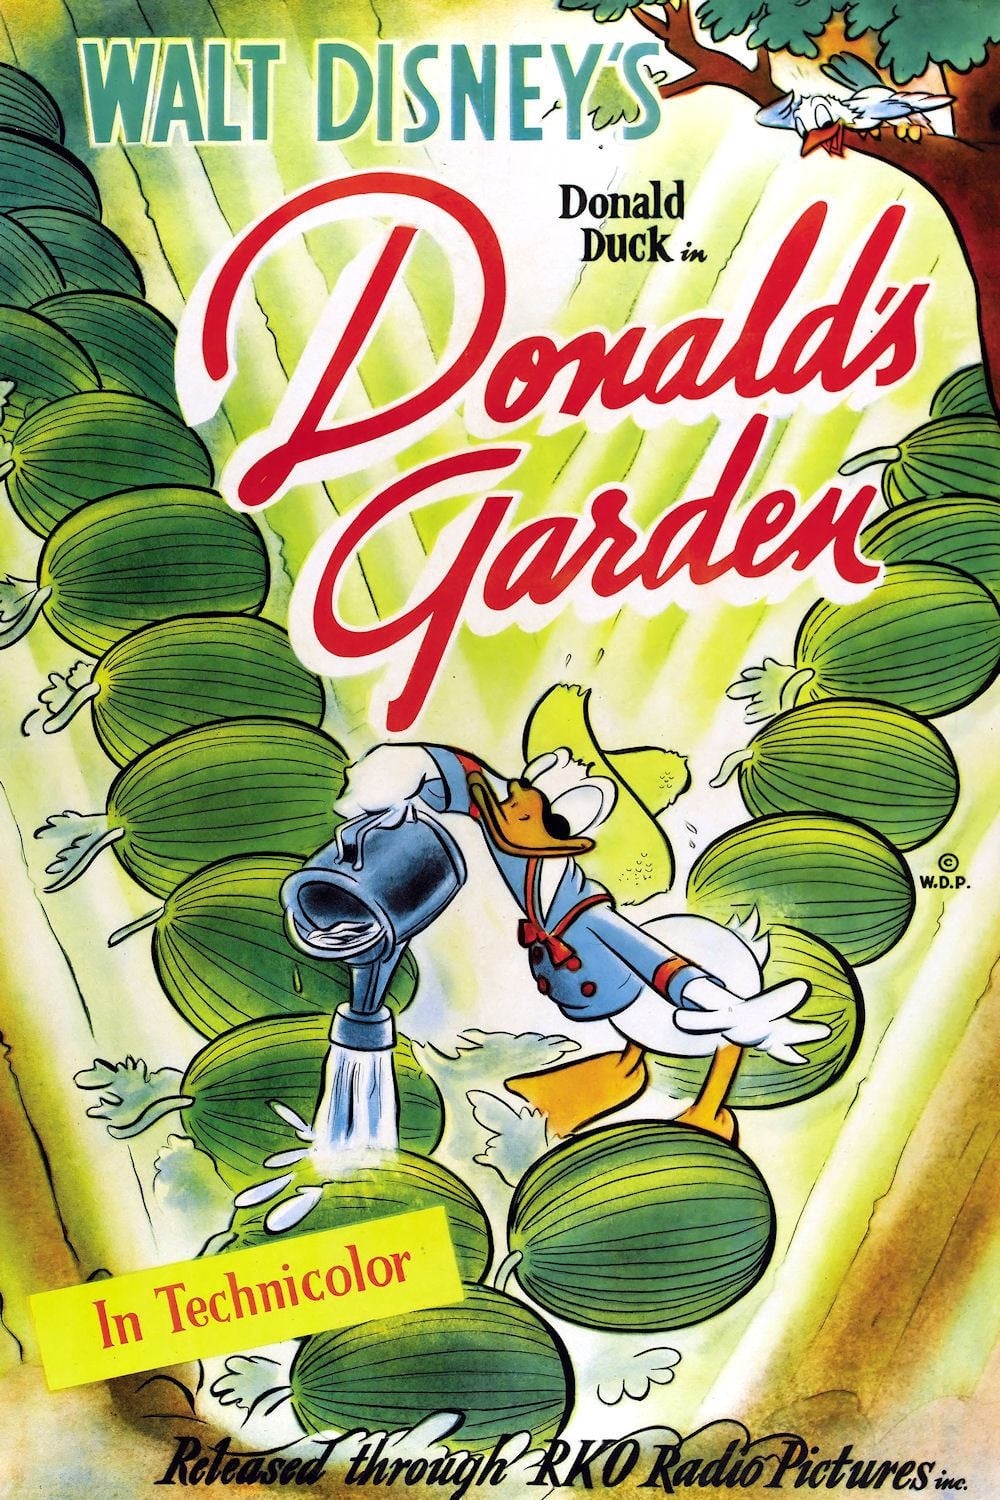 Donald's Garden (1942)